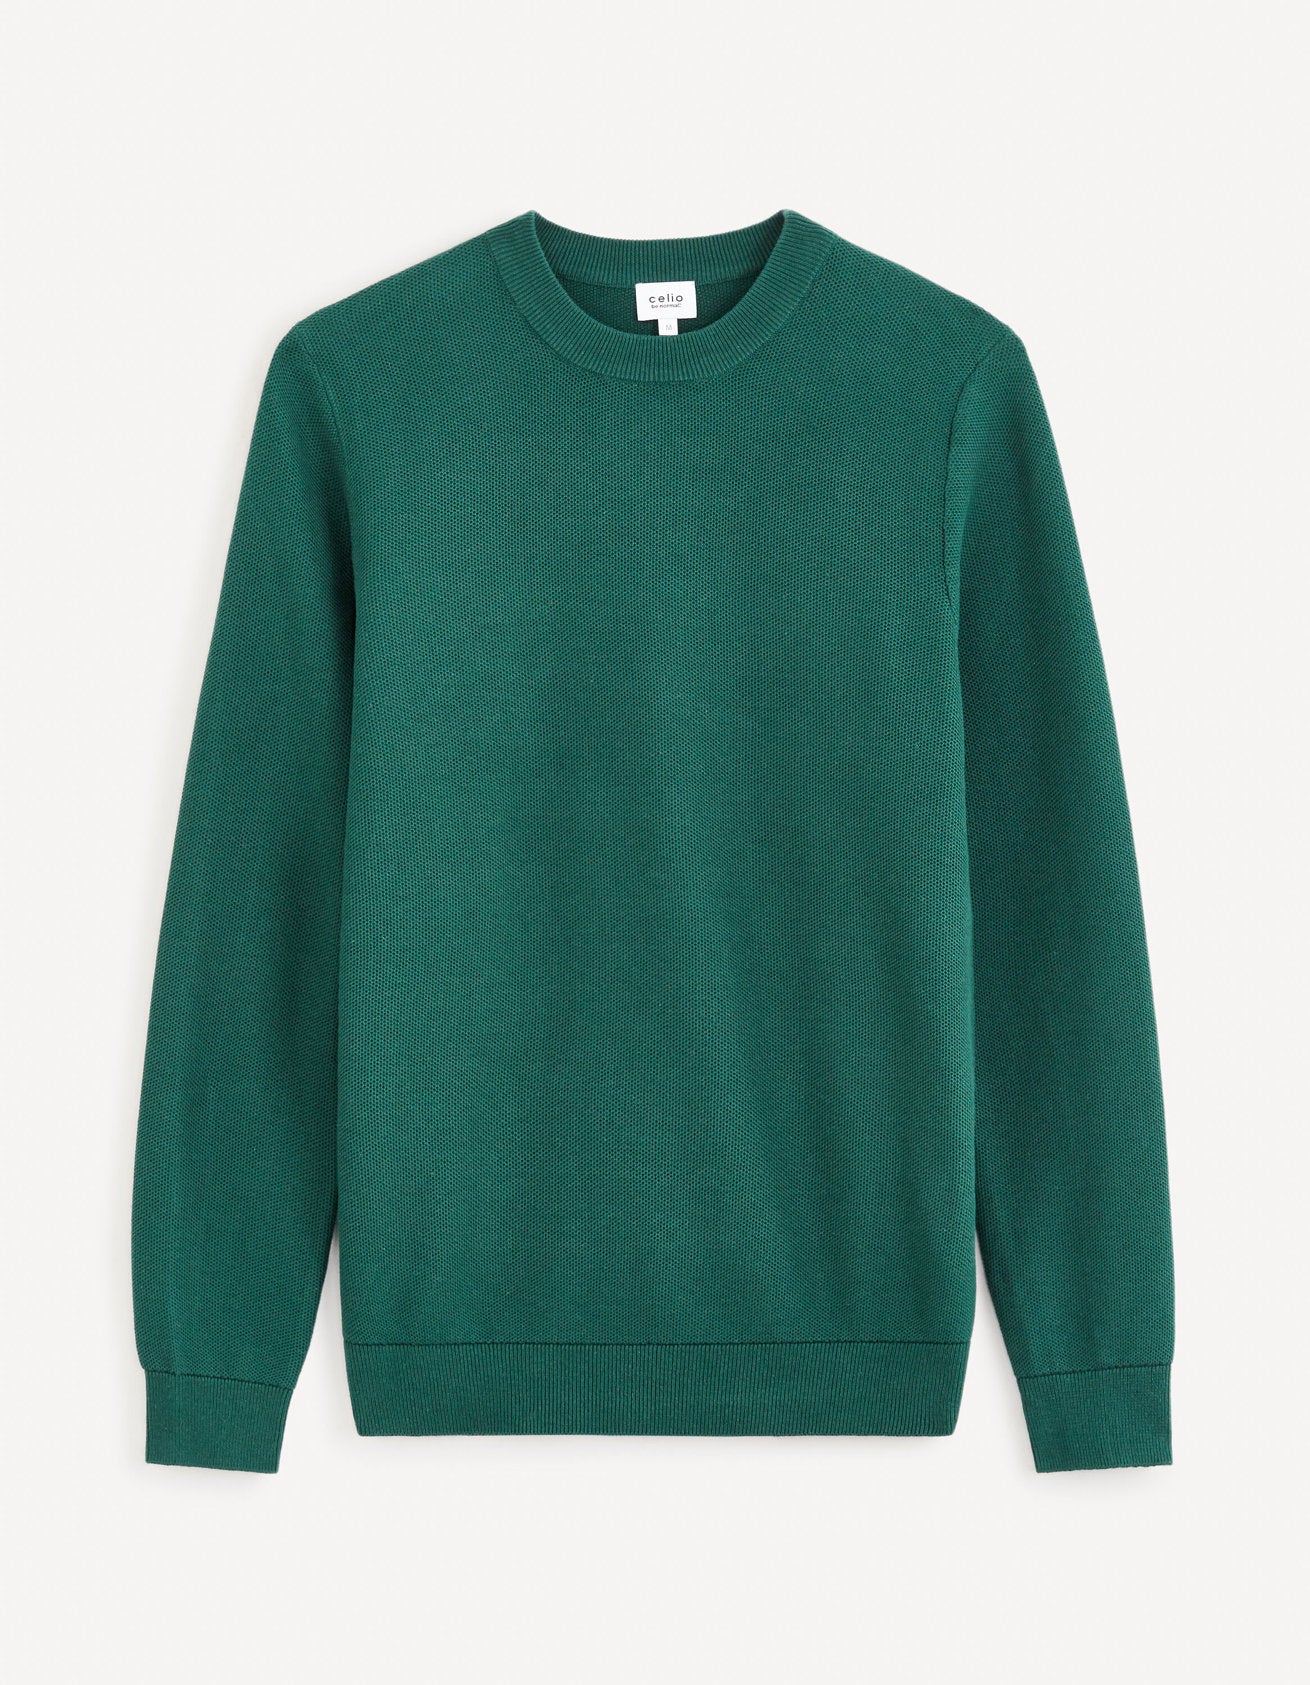 100% Cotton Round Neck Sweater - Green_BEPIC_DARK GREEN_02